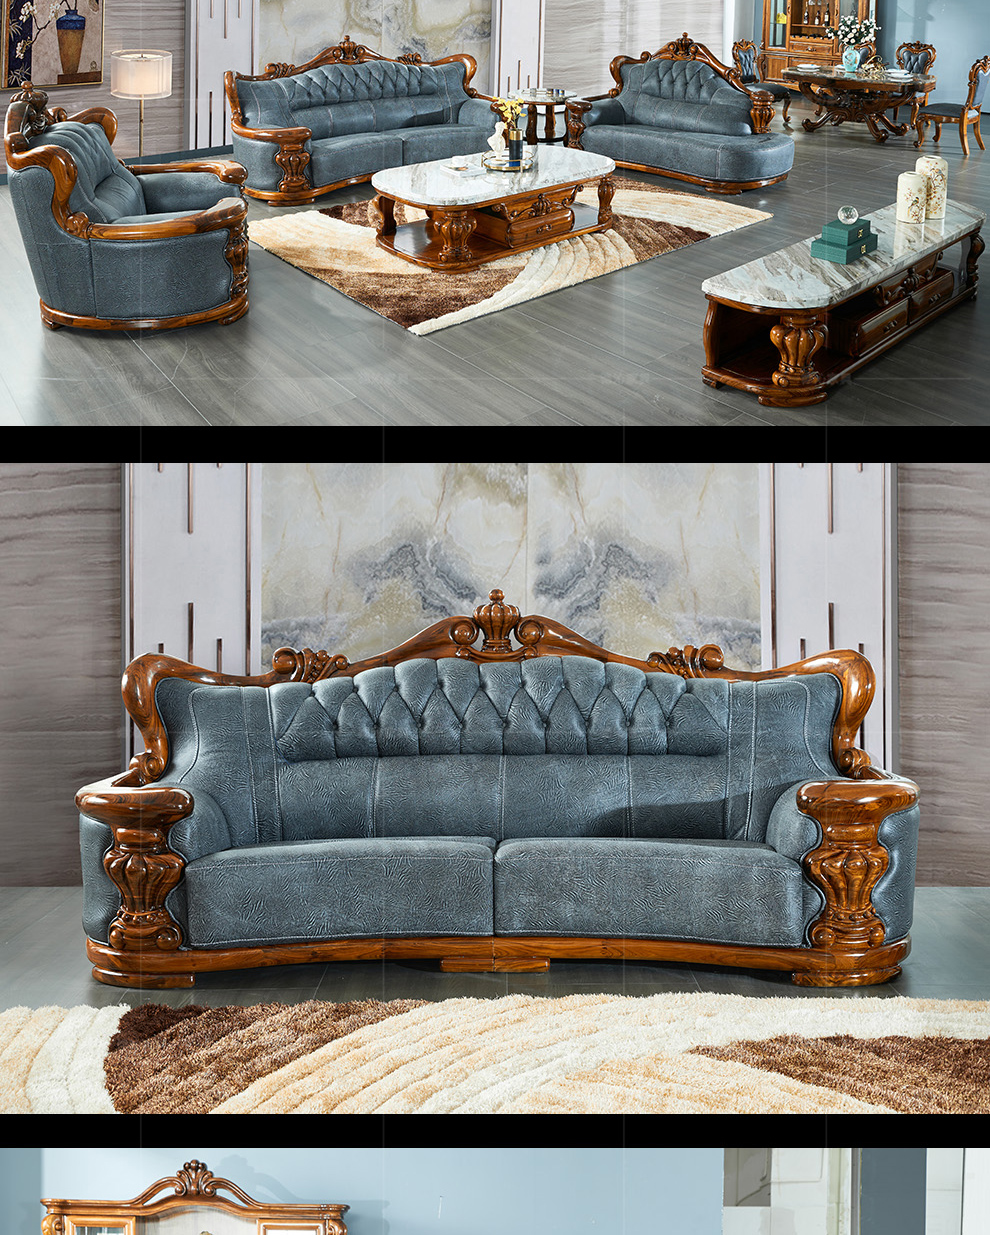 乌金木沙发现代简约欧式古典设计风格新中式真皮沙发乌金木客厅贵妃皮